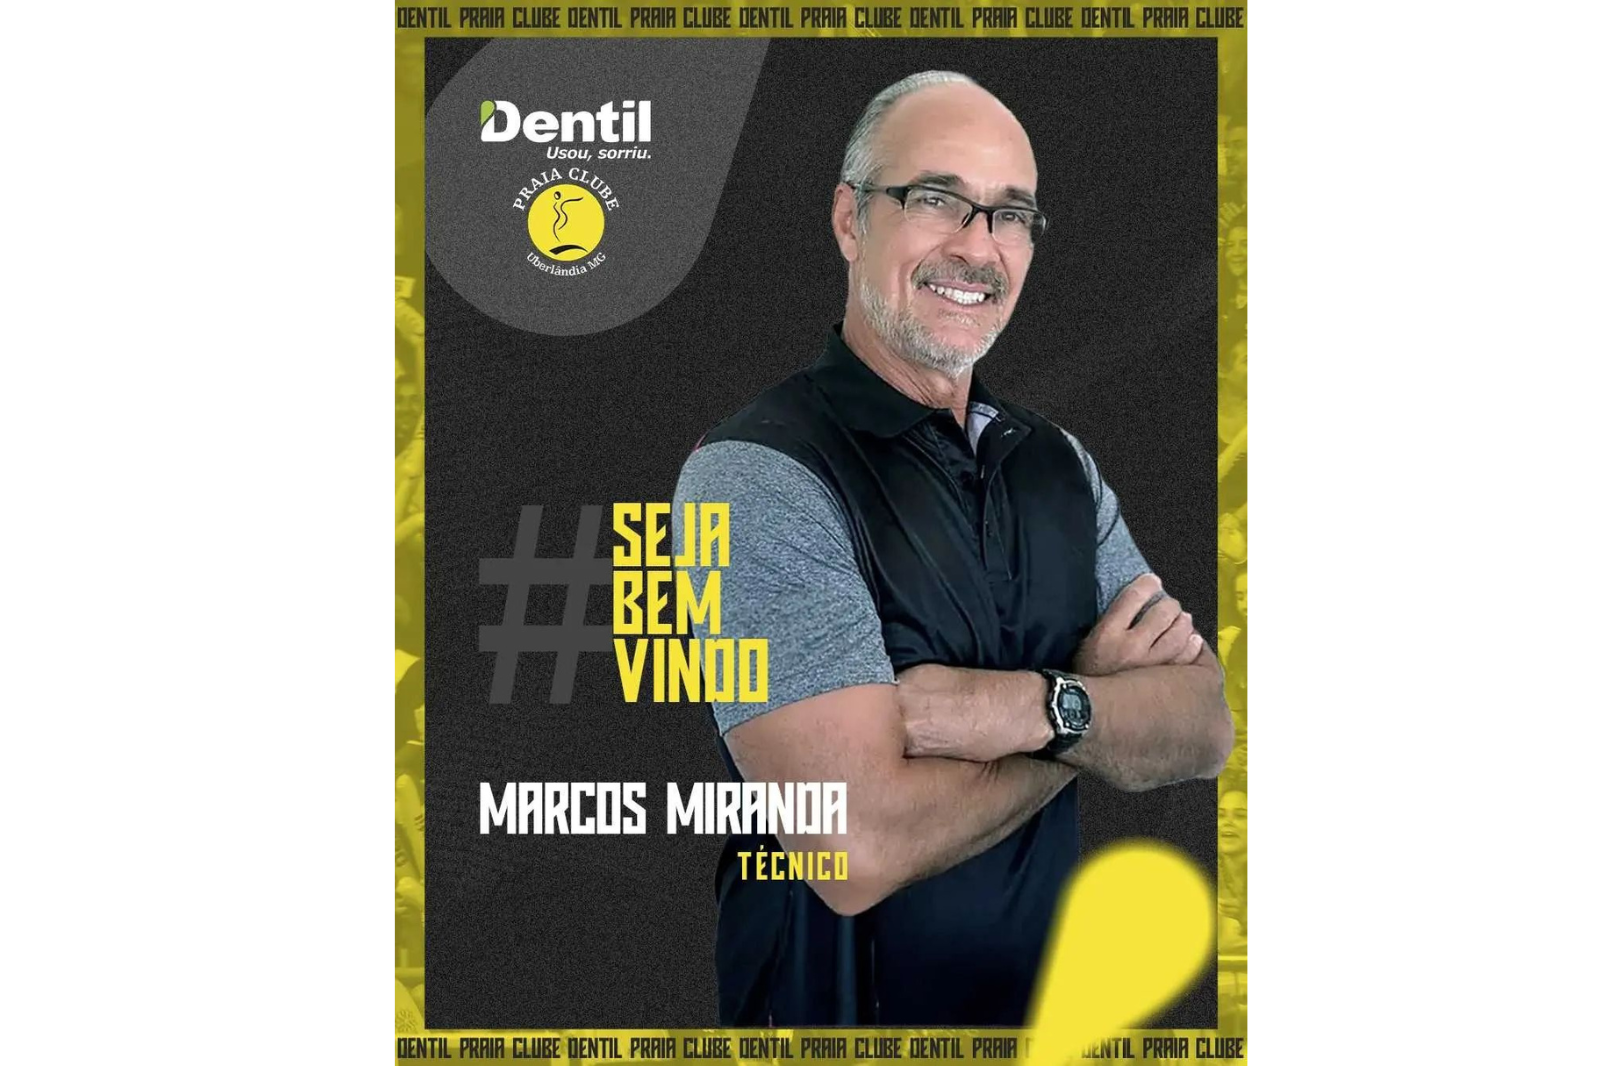 Marcos Miranda, o Marcão, é o novo técnico do Dentil Praia Clube